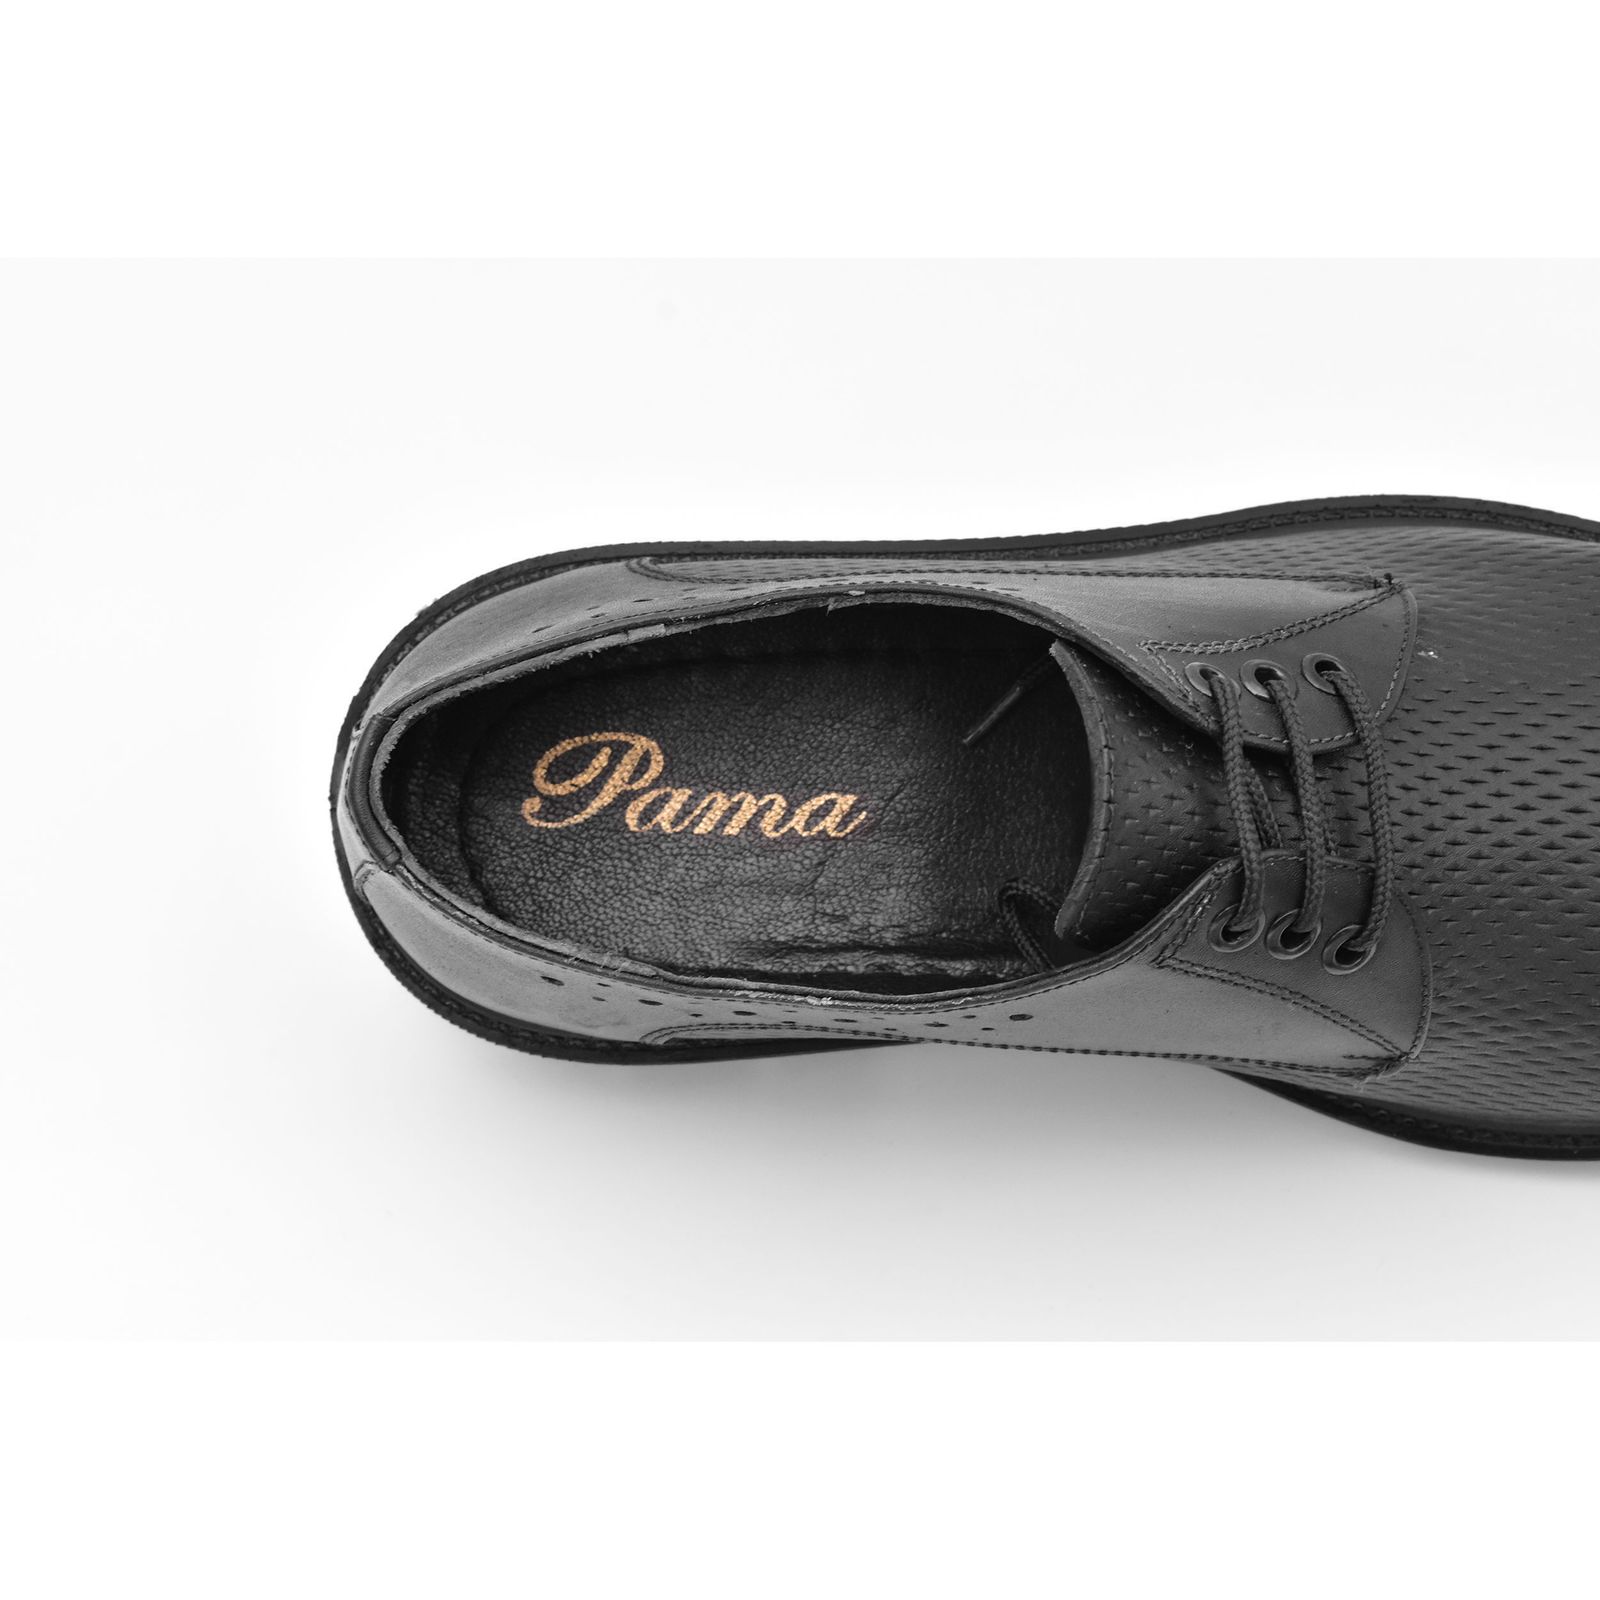 کفش مردانه پاما مدل Morano کد G1184 -  - 9